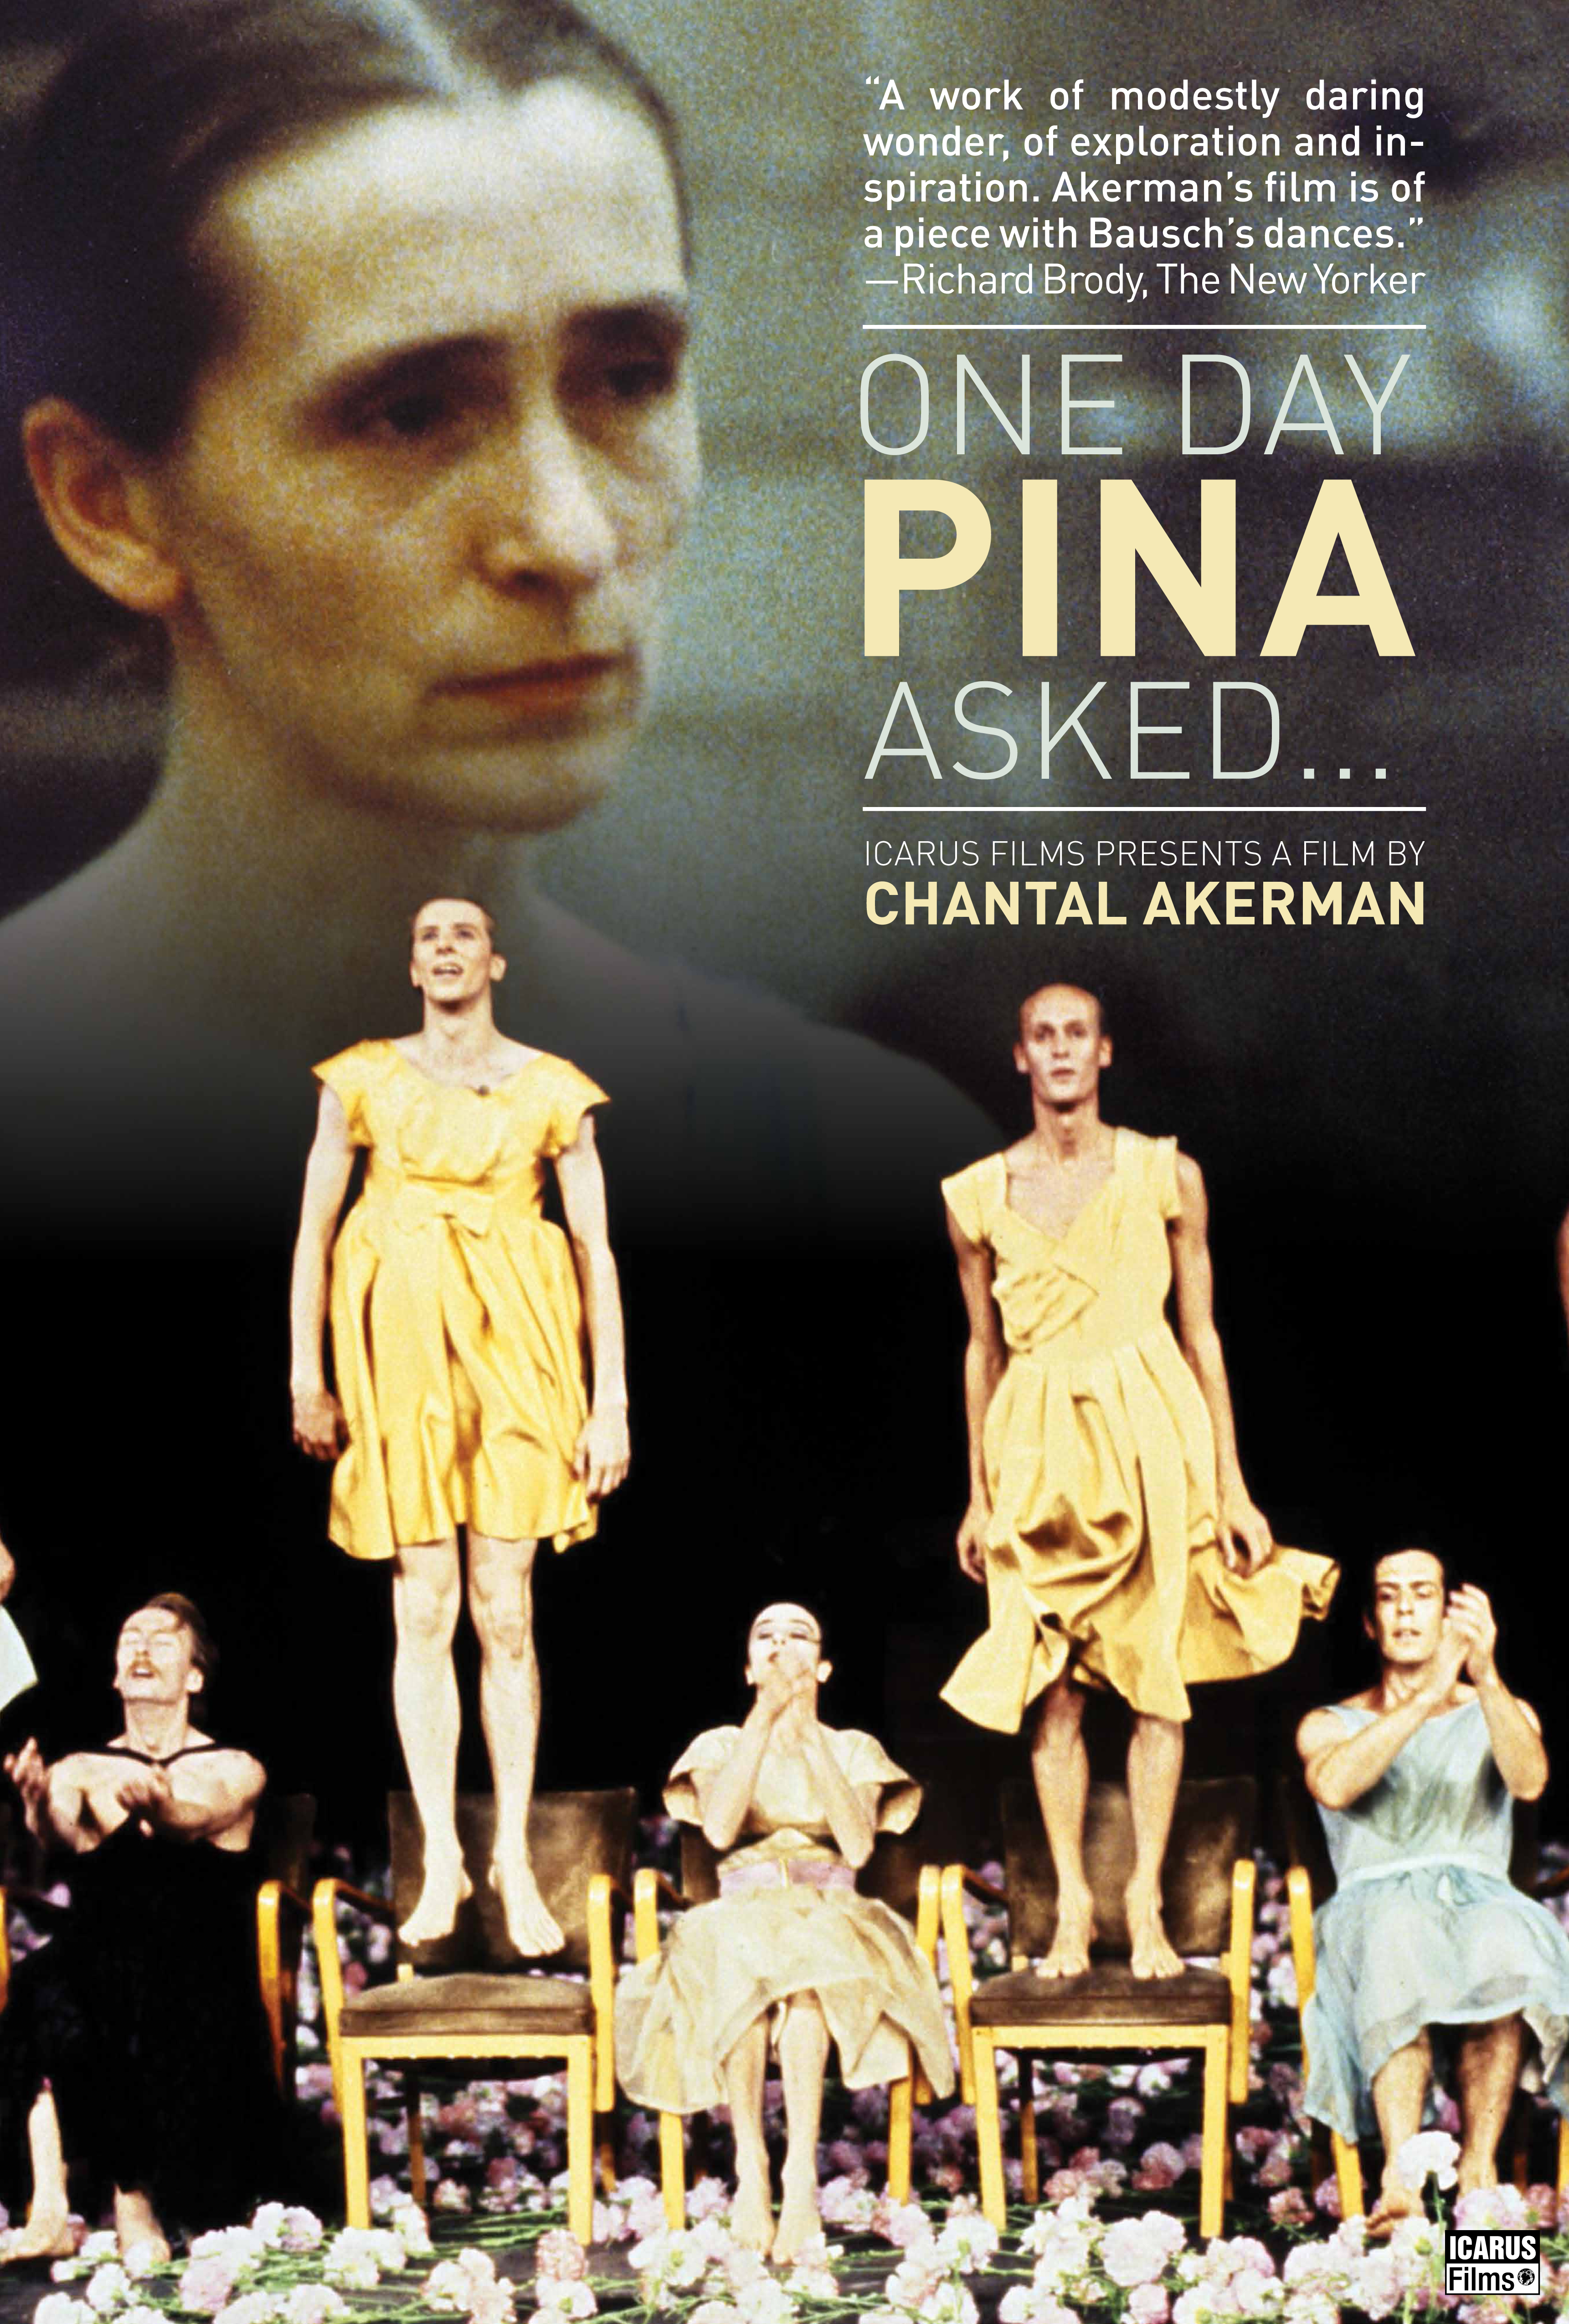 Chantal Akerman and Pina Bausch in Un jour Pina m'a demandé (1983)